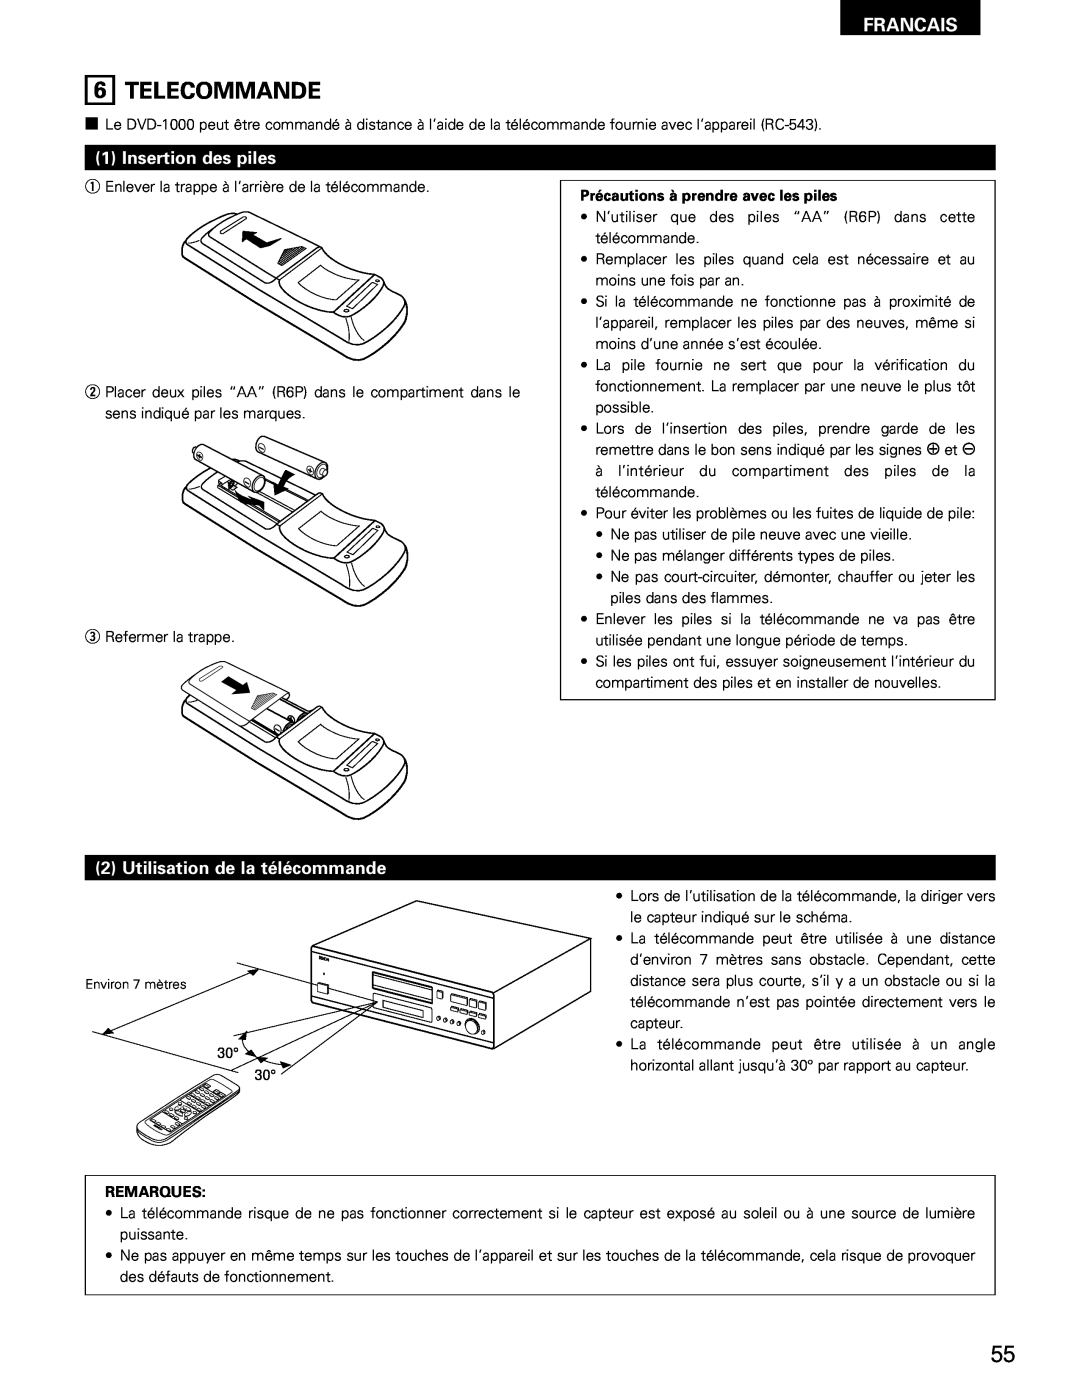 Denon DVD-1000 manual Telecommande, Insertion des piles, Utilisation de la télécommande, Francais, Remarques 